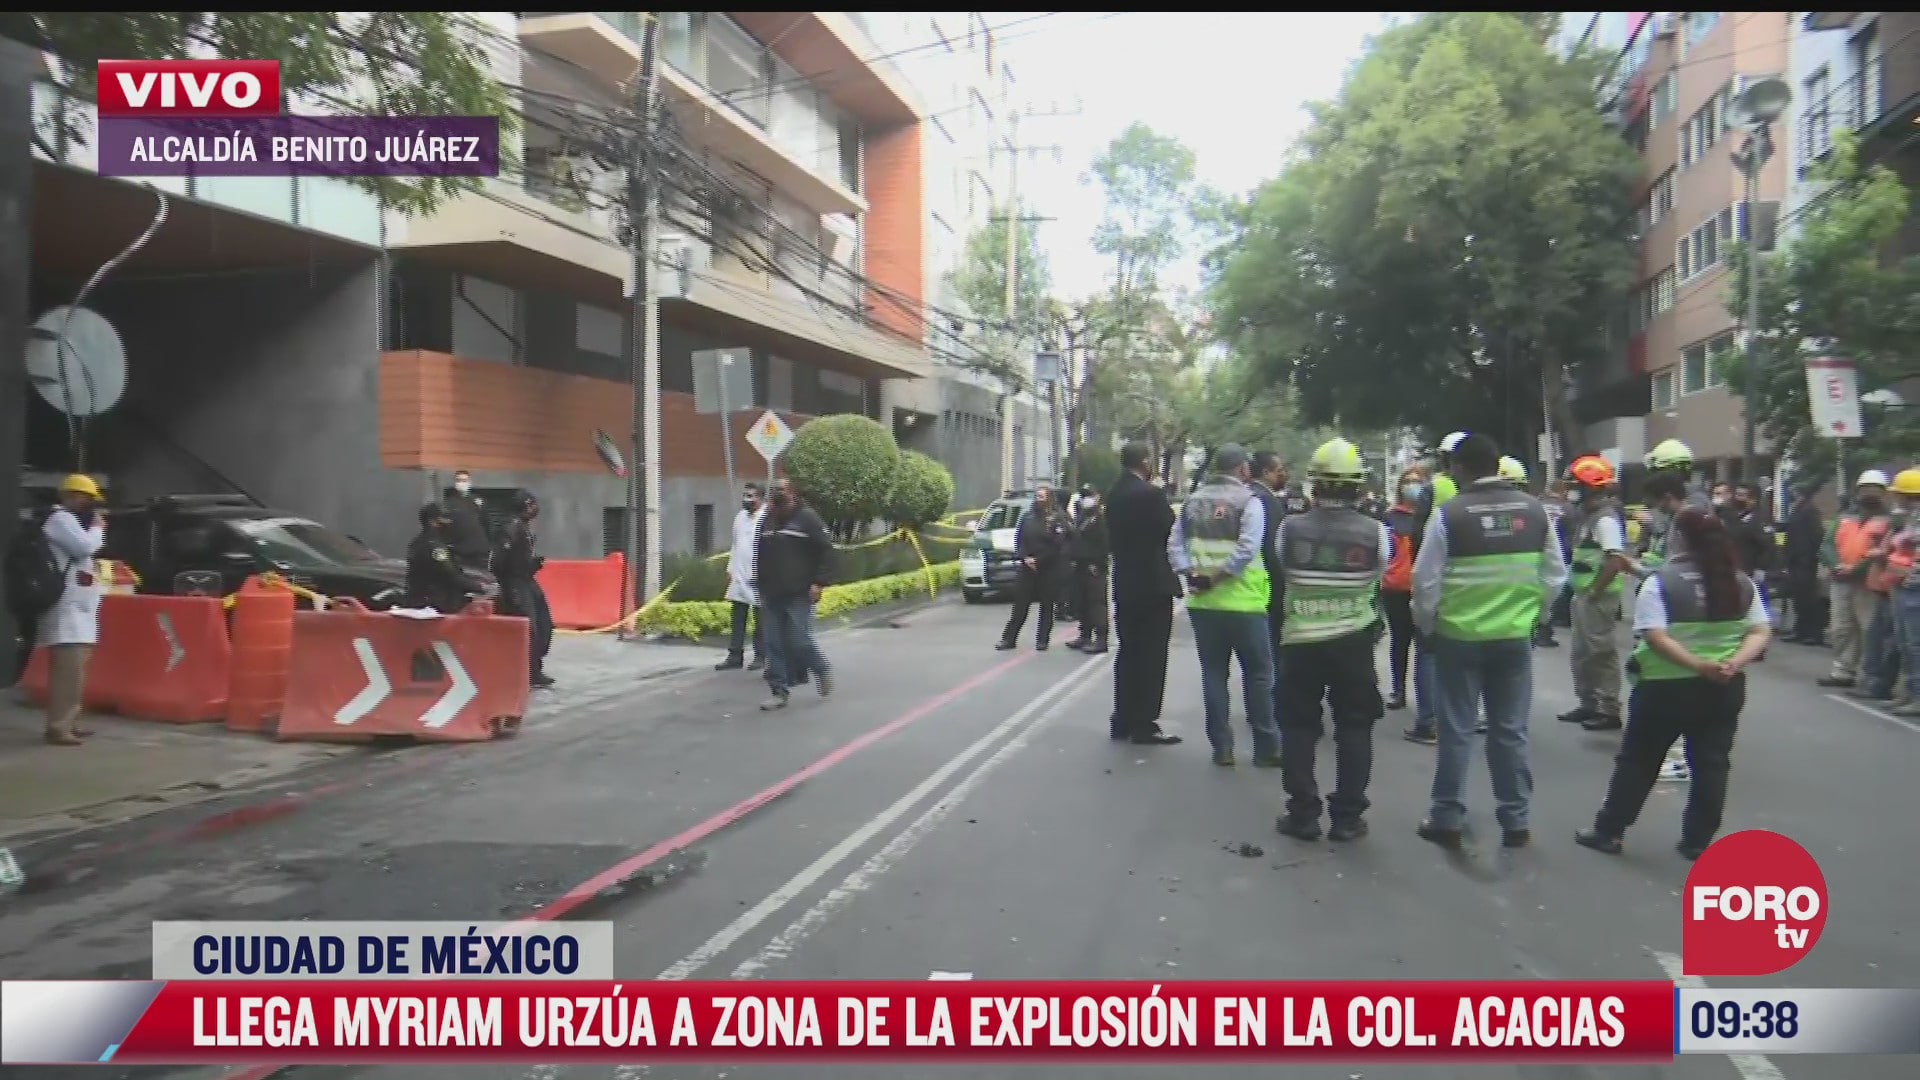 myriam urzua supervisa trabajos en edificio danado por explosion en avenida coyoacan